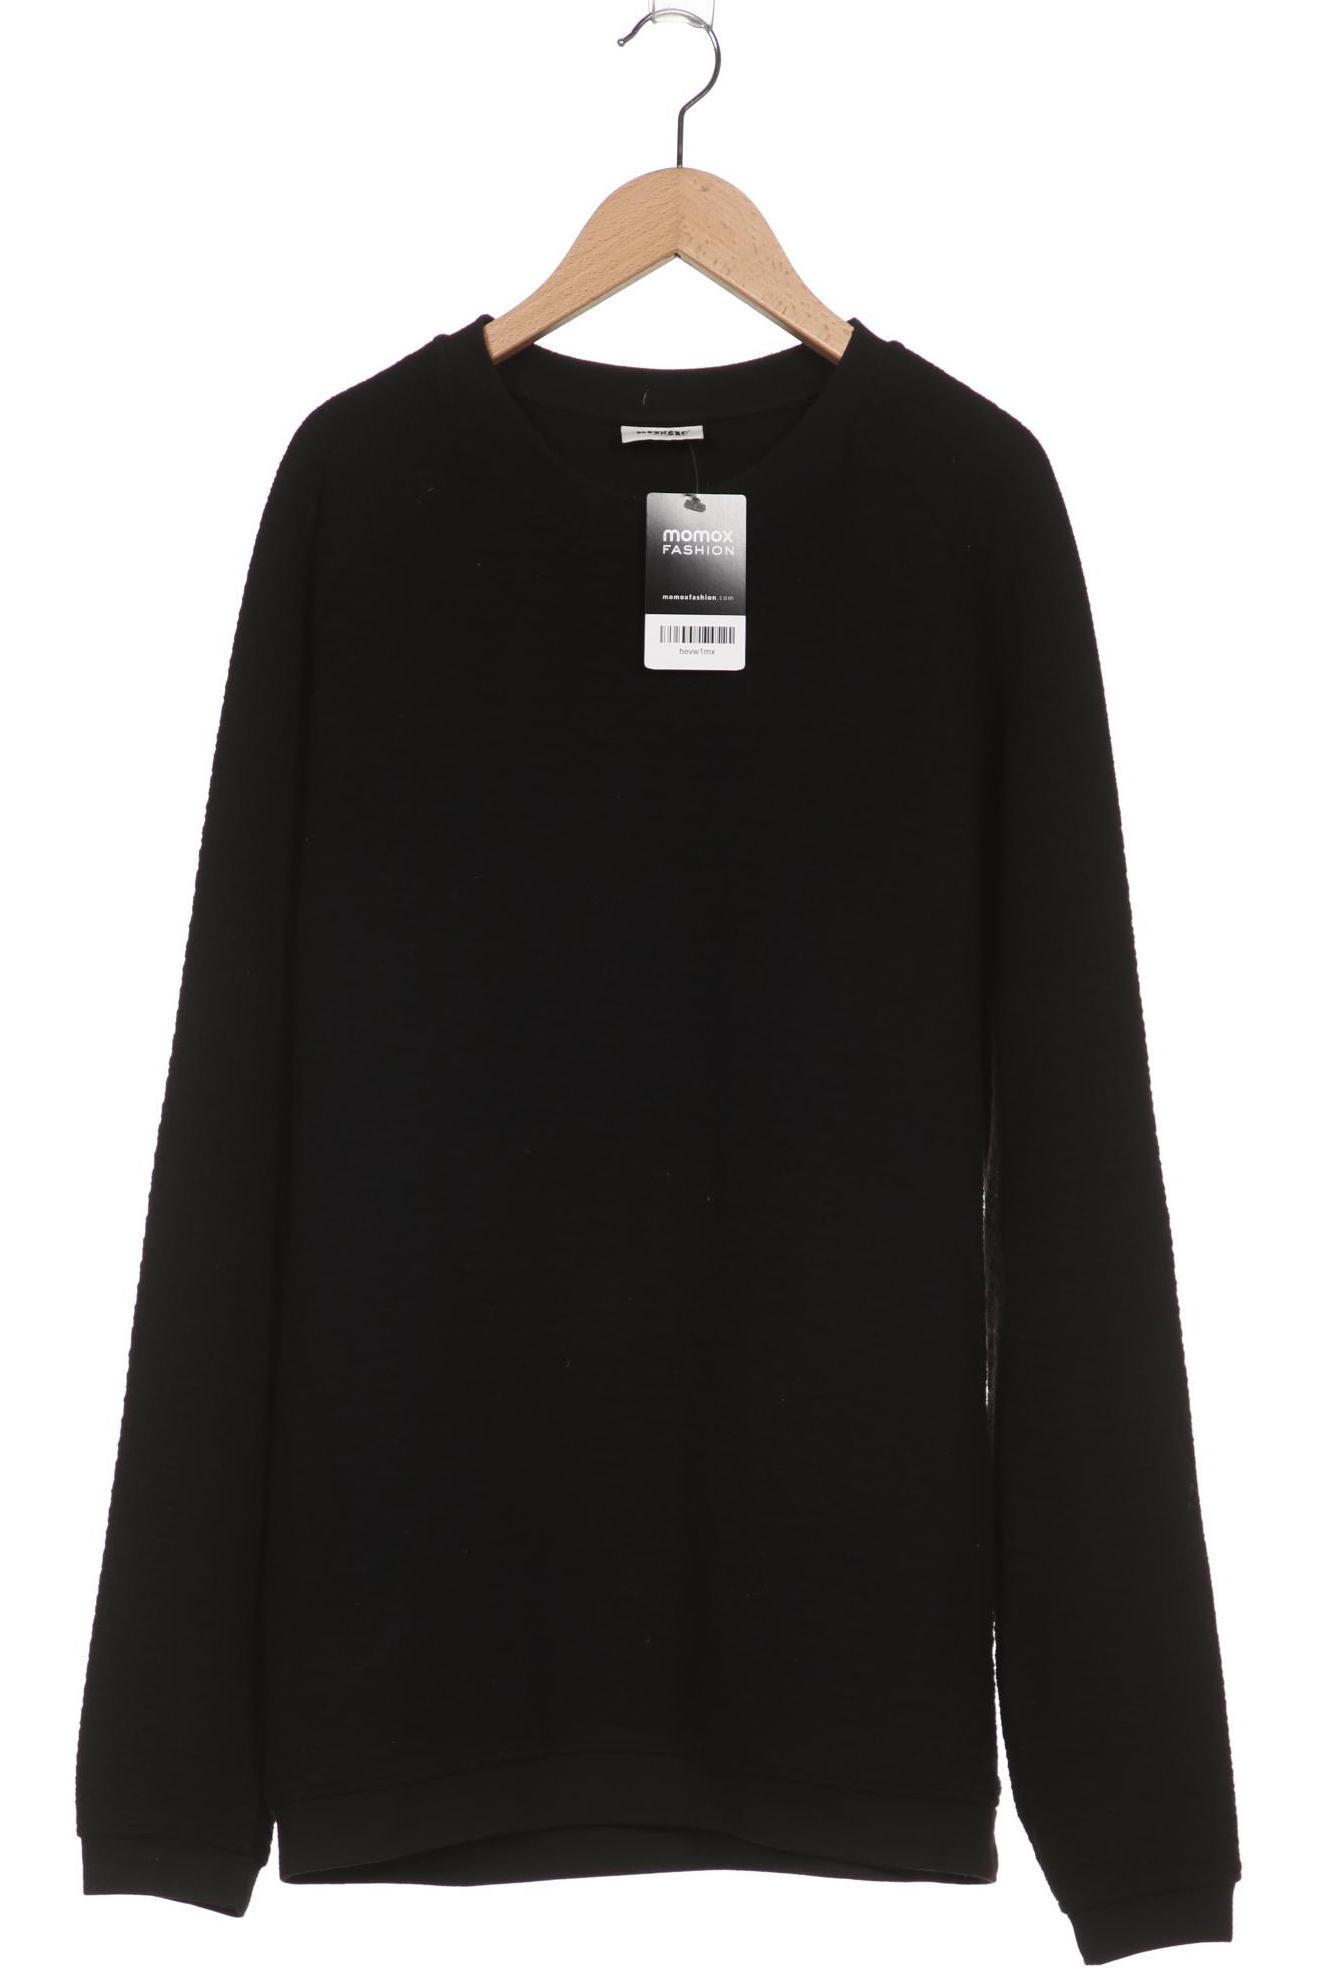 Weekday Herren Sweatshirt, schwarz, Gr. 48 von Weekday